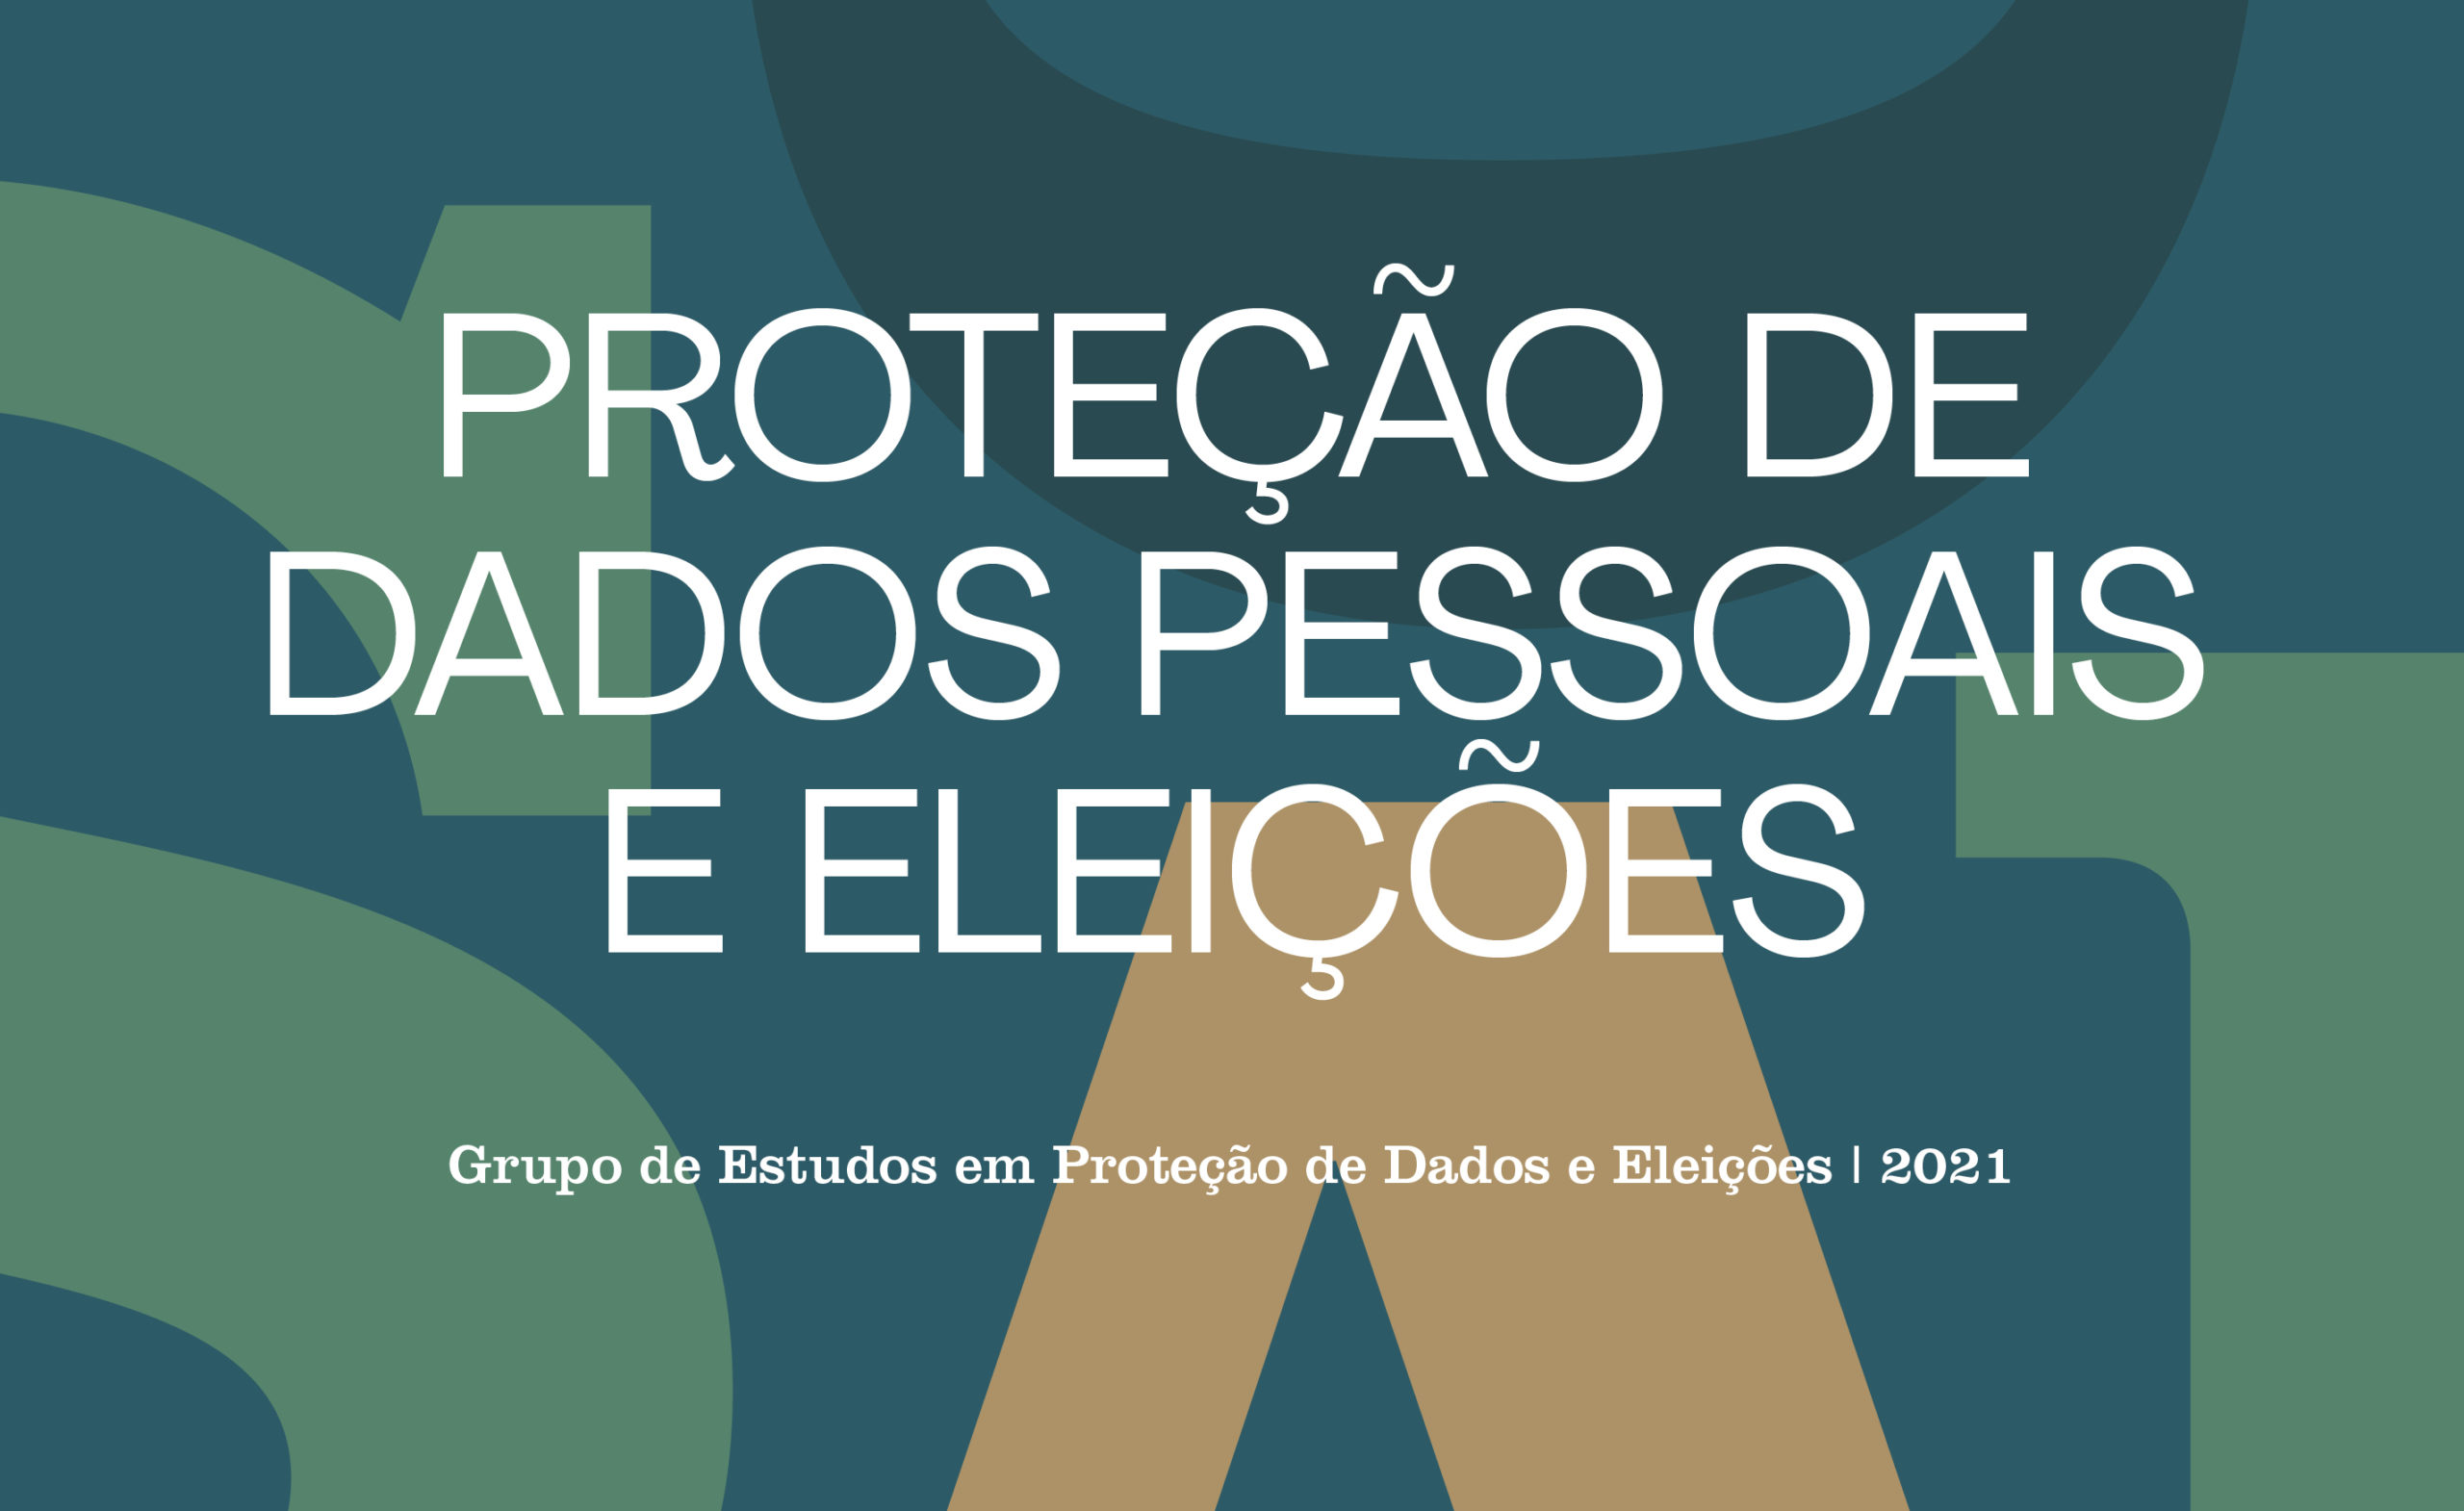 A imagem com fundo colorido (em tons de verde claro, azul claro e azul escuro) formando um s, apresenta o texto centralizado "Proteção de dados pessoais e eleições".